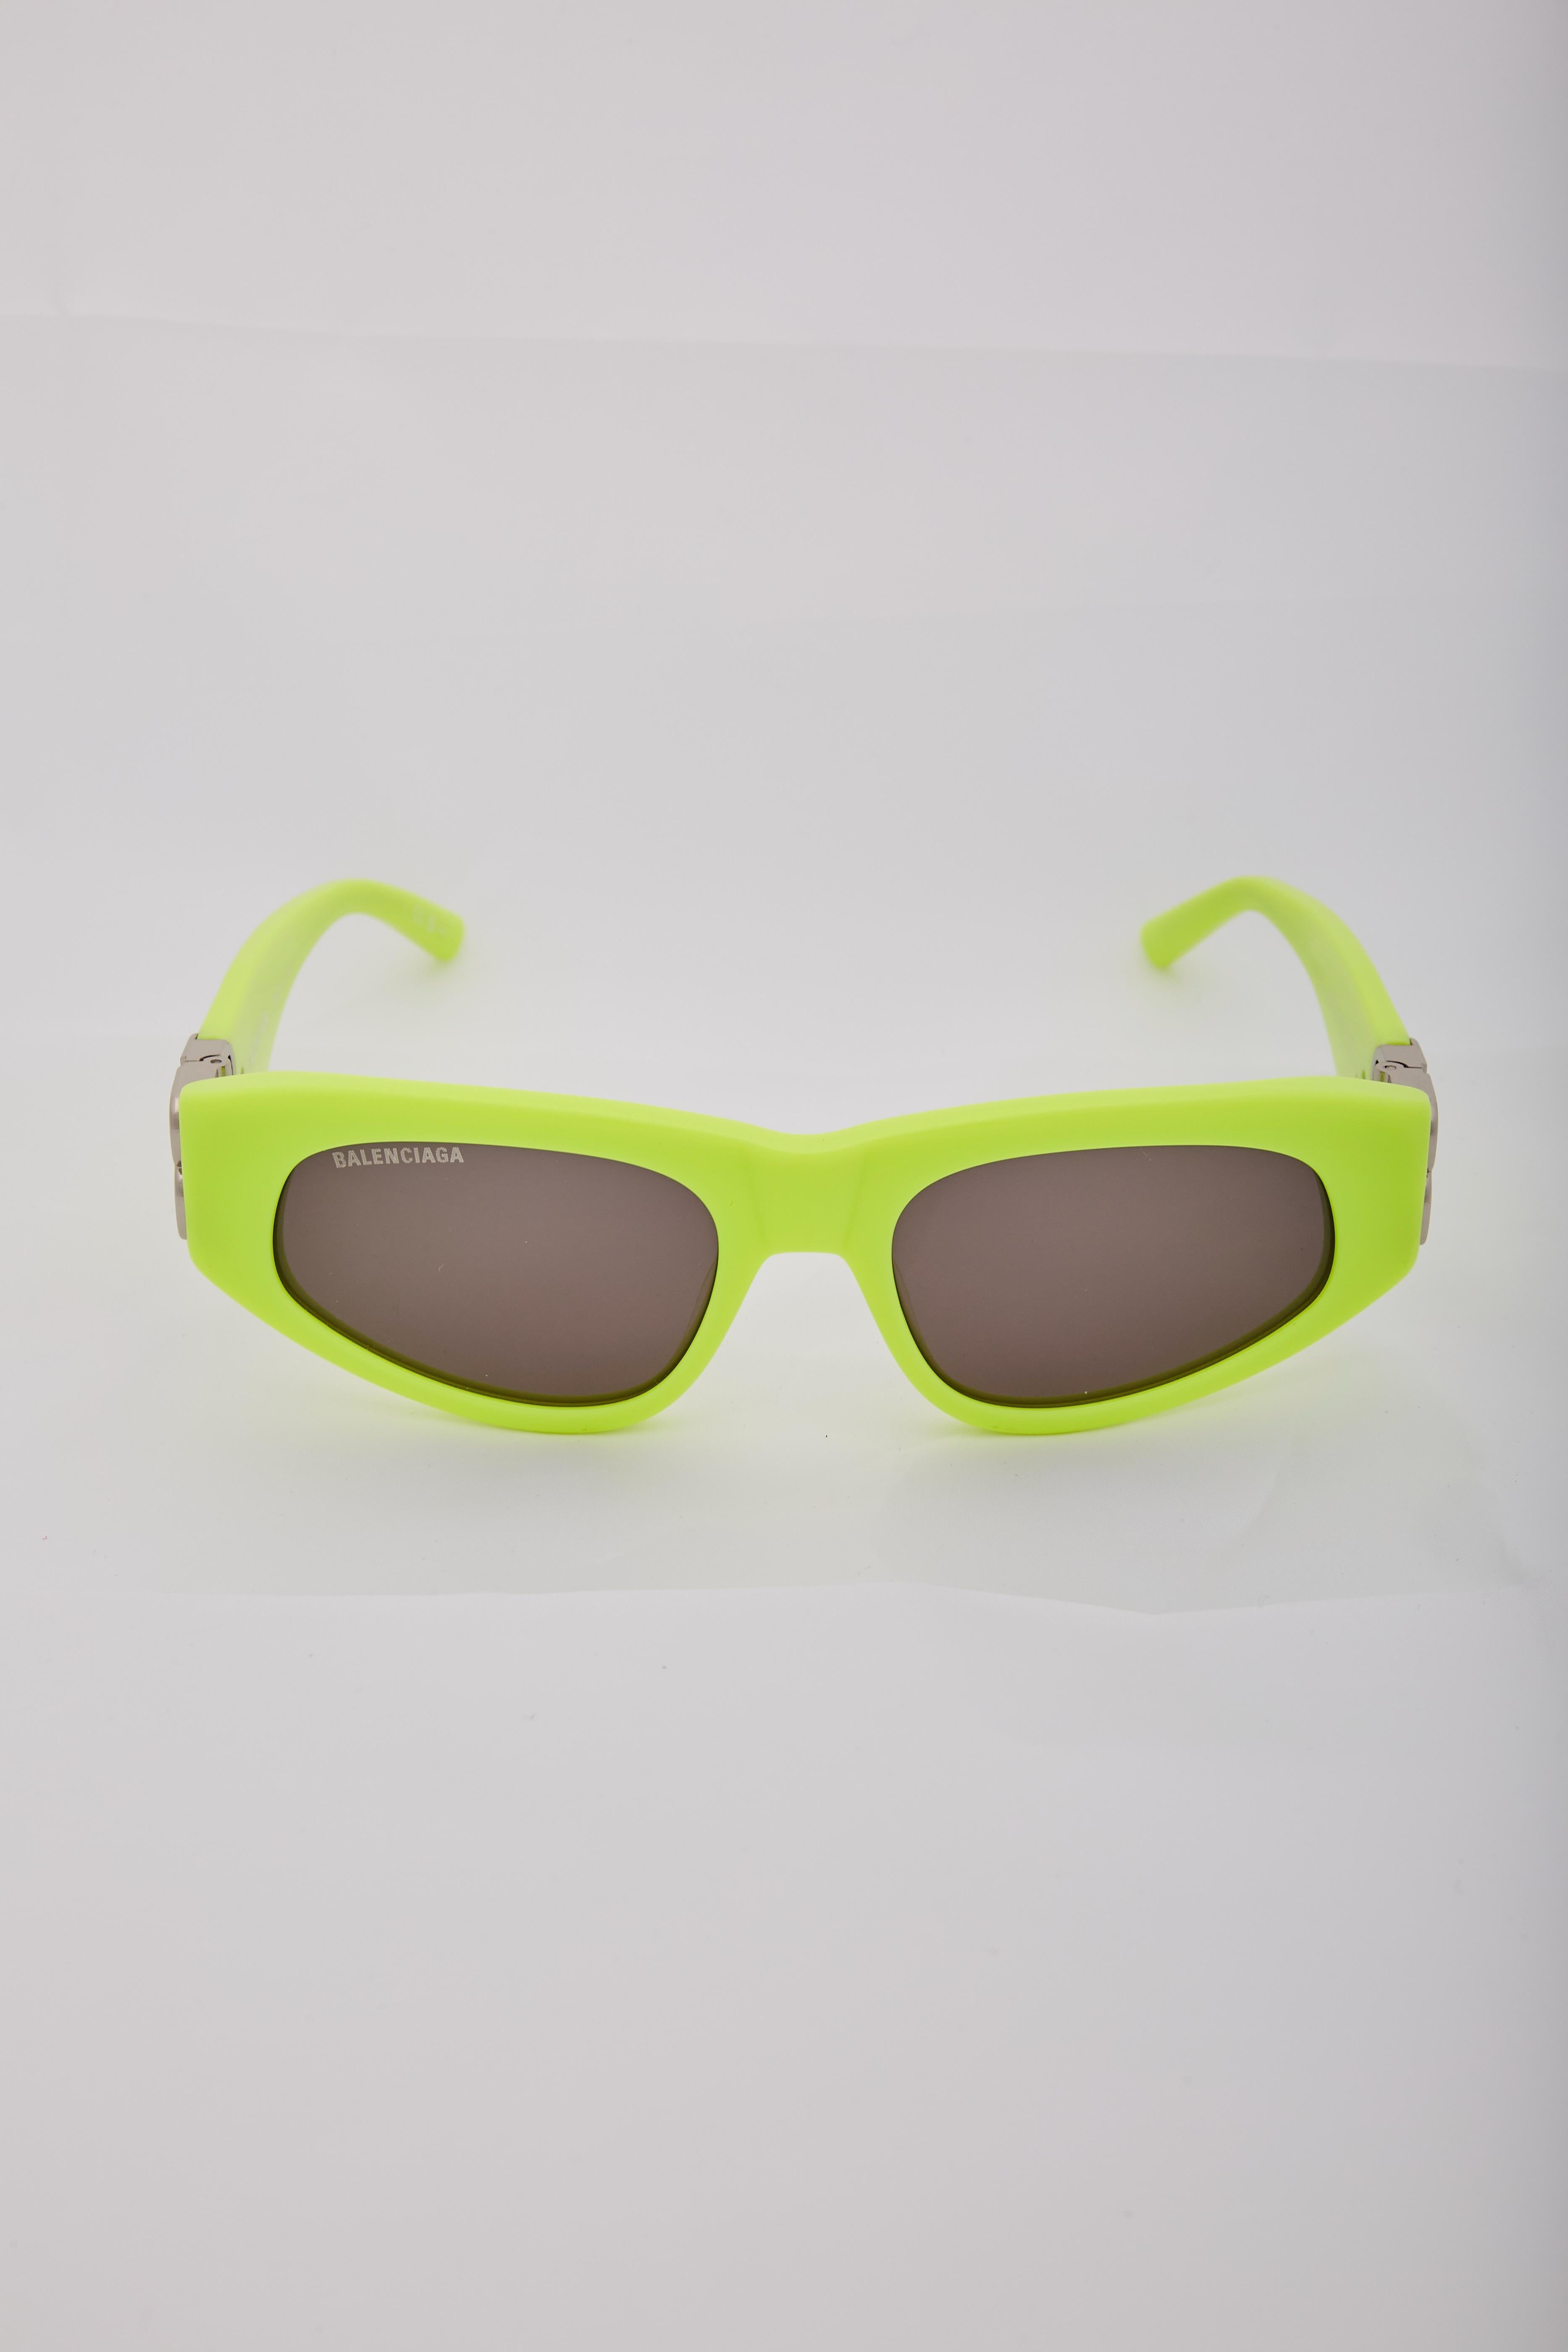 Les lunettes de soleil Dynasty de Balenciaga présentent une monture en D avec des charnières cachées dans le logo BB argenté brillant, logo gravé au laser sur la lentille droite.

Couleur : Jaune
Code de l'article : BB0095S 007
Taille du timbre : 53